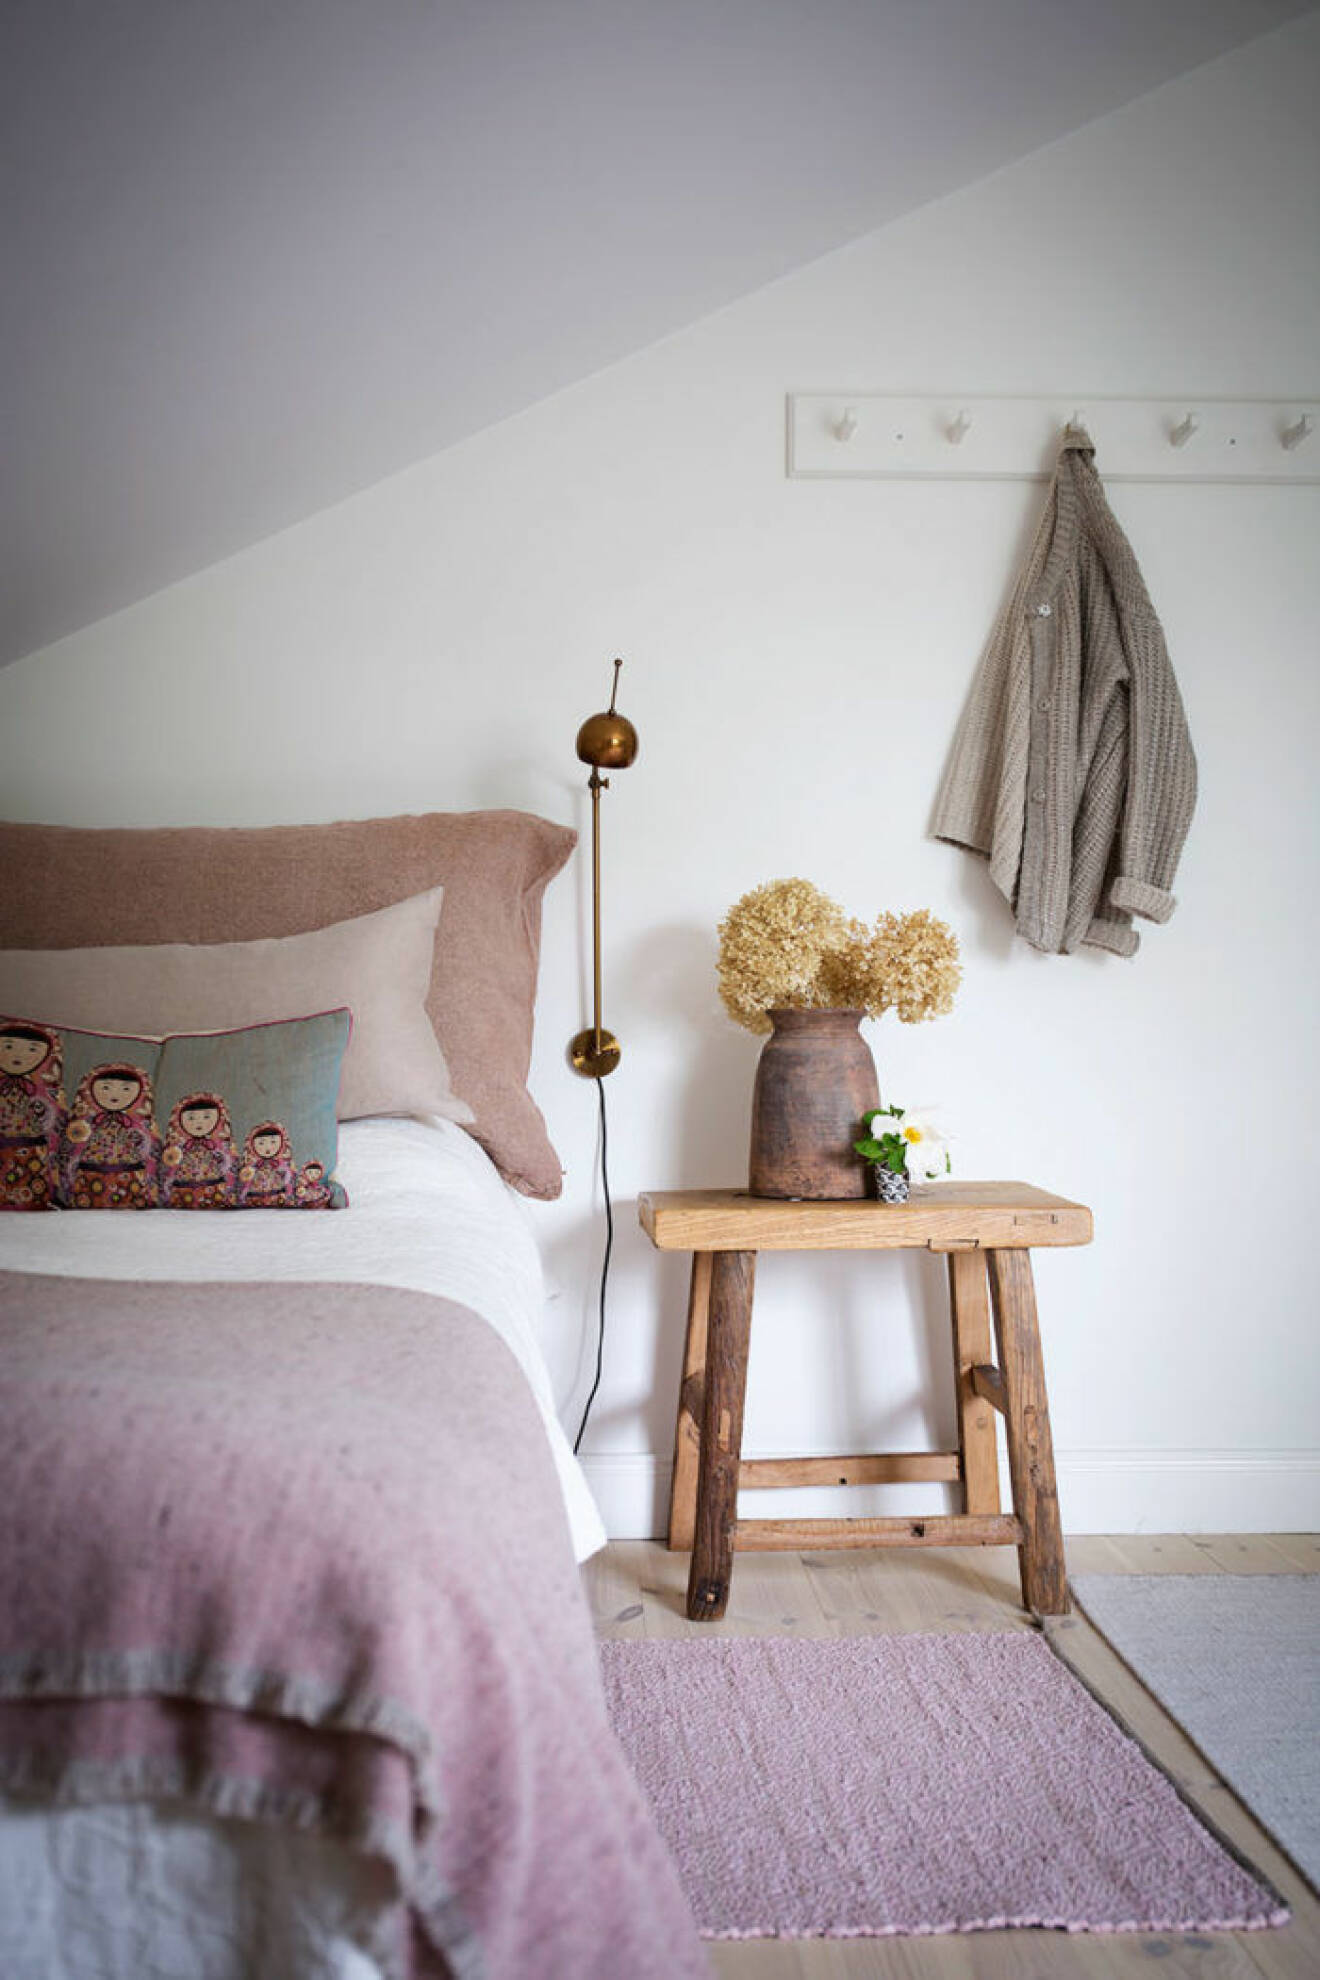 Sovrum med rosa toner och liten träpall som nattuksbord